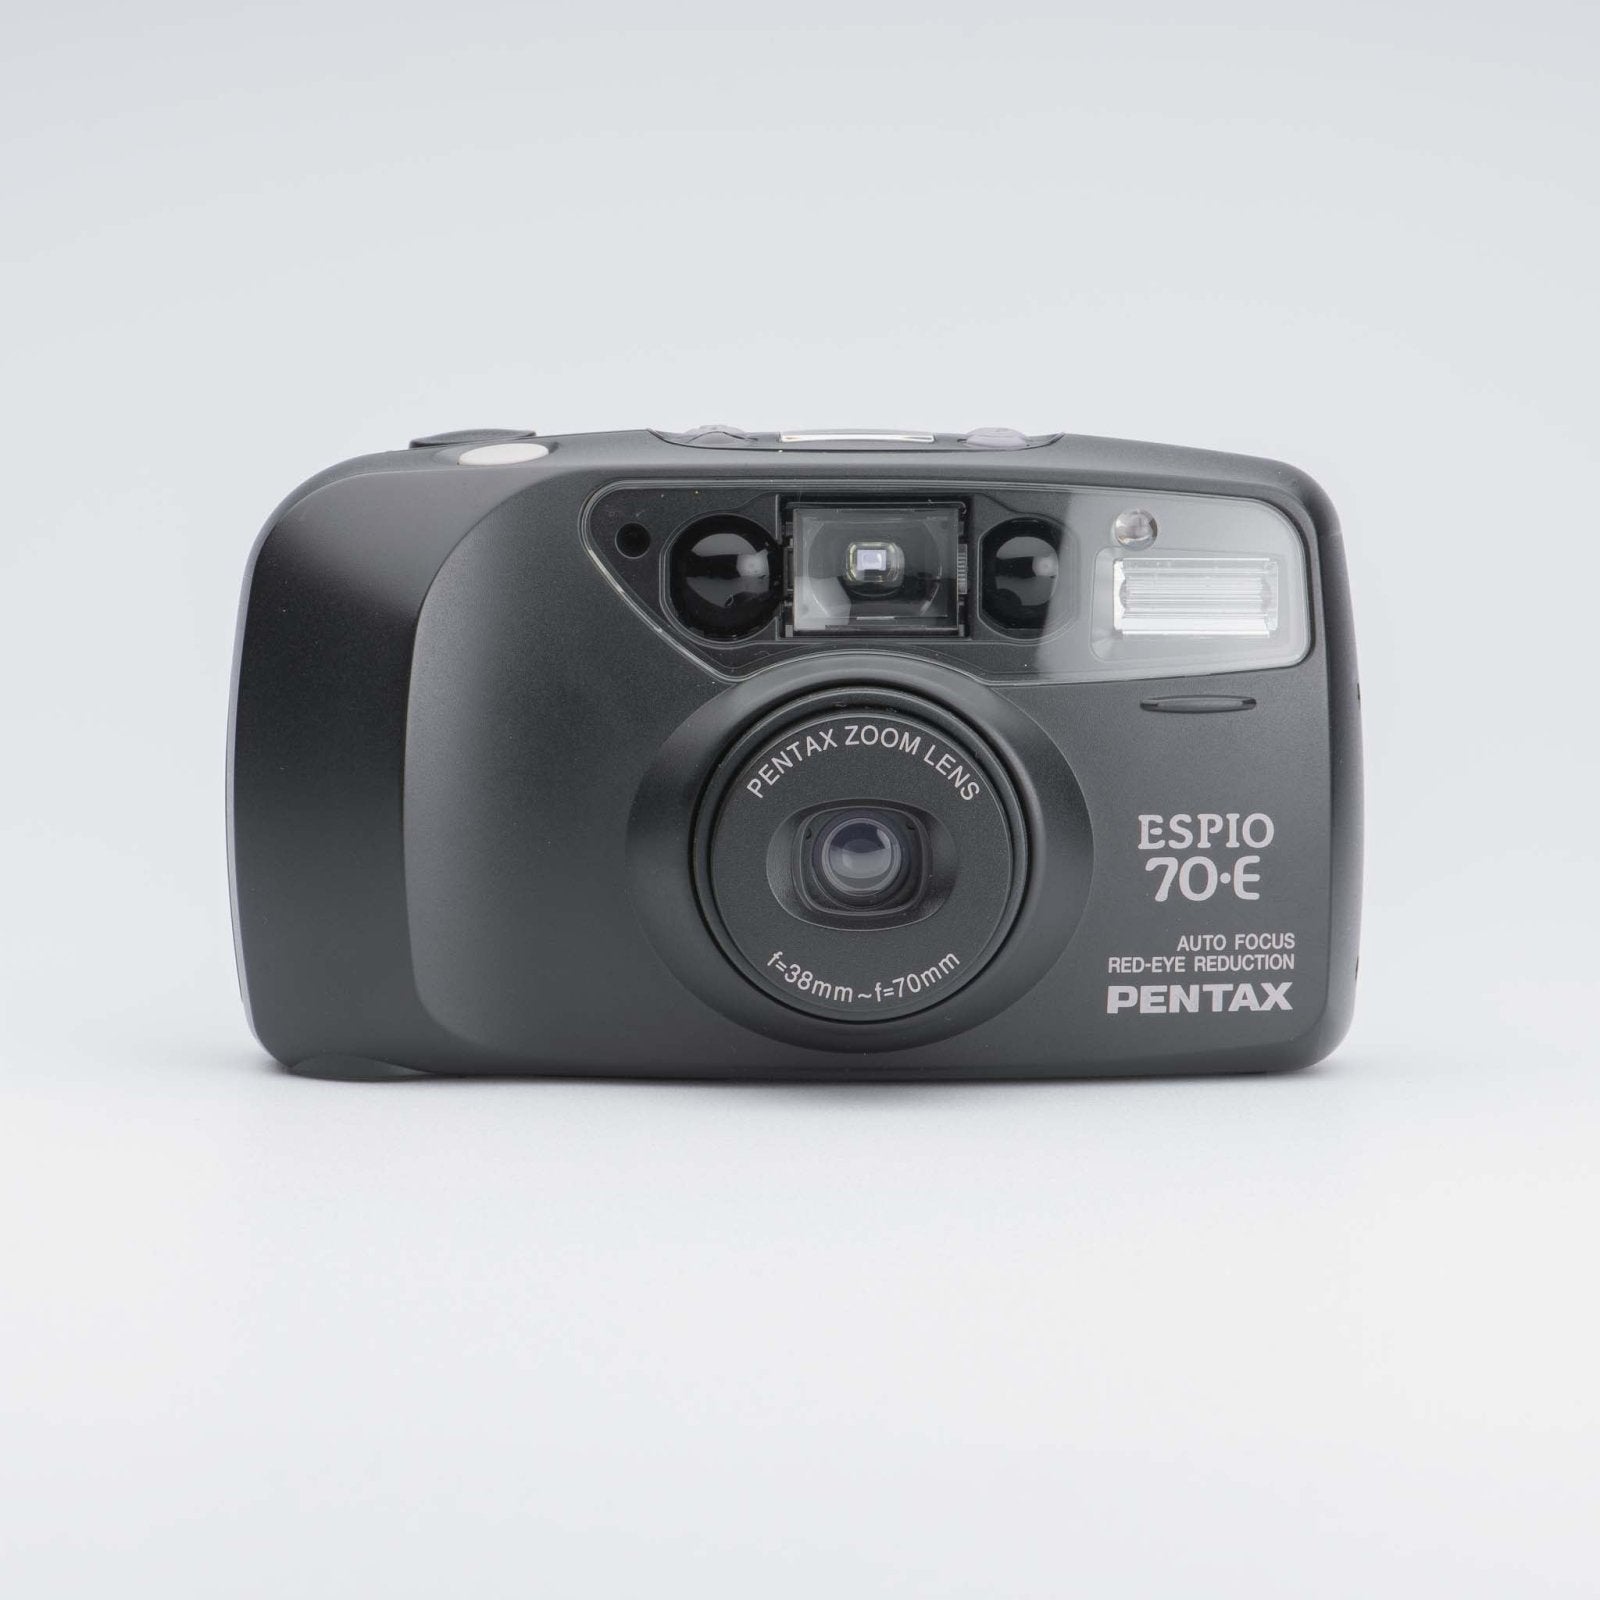 Pentax Espio 70-E 35mm Film Camera